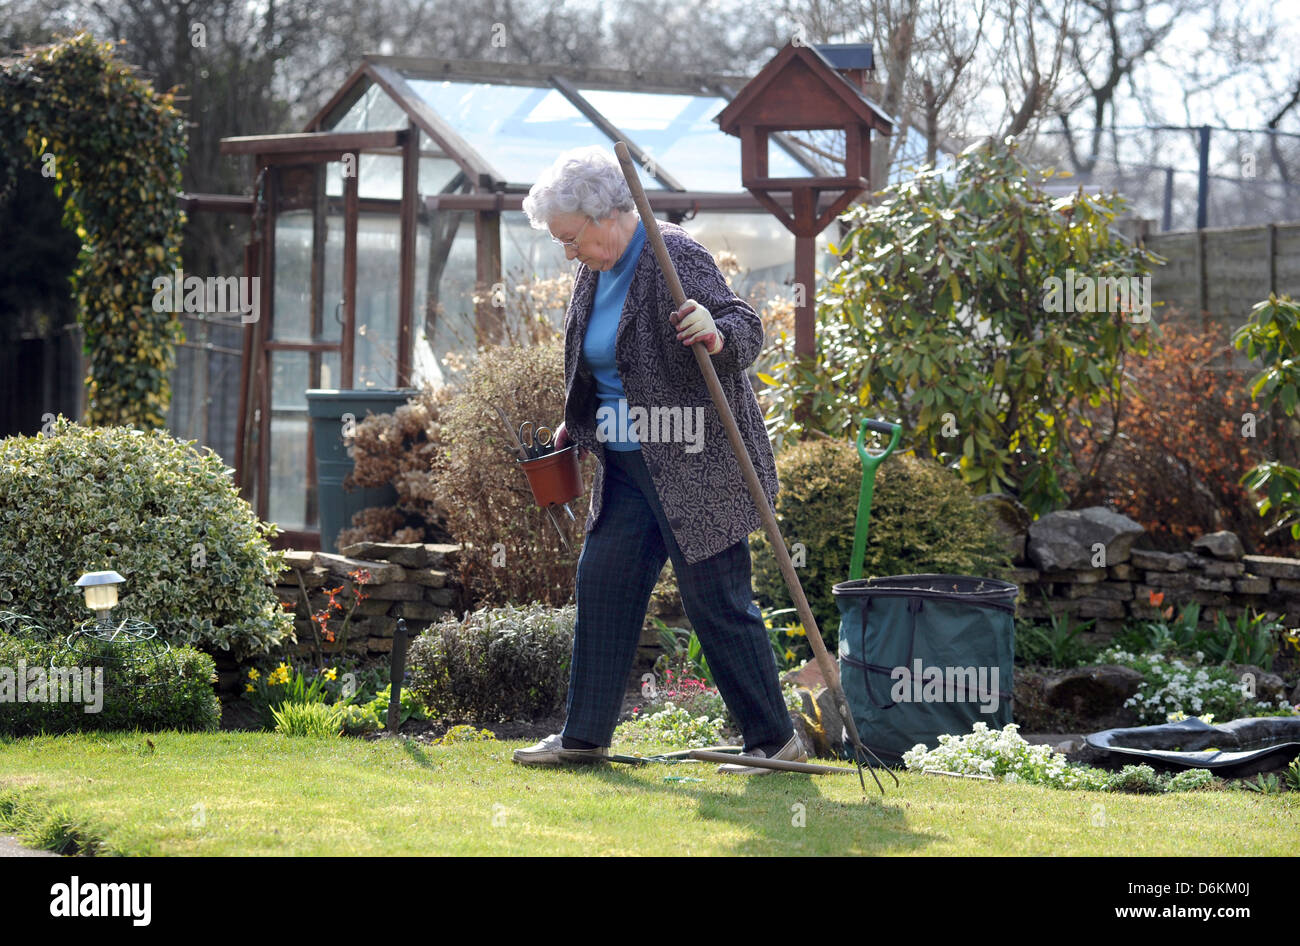 La vieja señora trabajando en el jardín RE VEJEZ PASATIEMPOS JARDINERÍA JUBILACIONES PRESTACIONES SOCIALES depresión viviendo más OUTDOOR UK Foto de stock